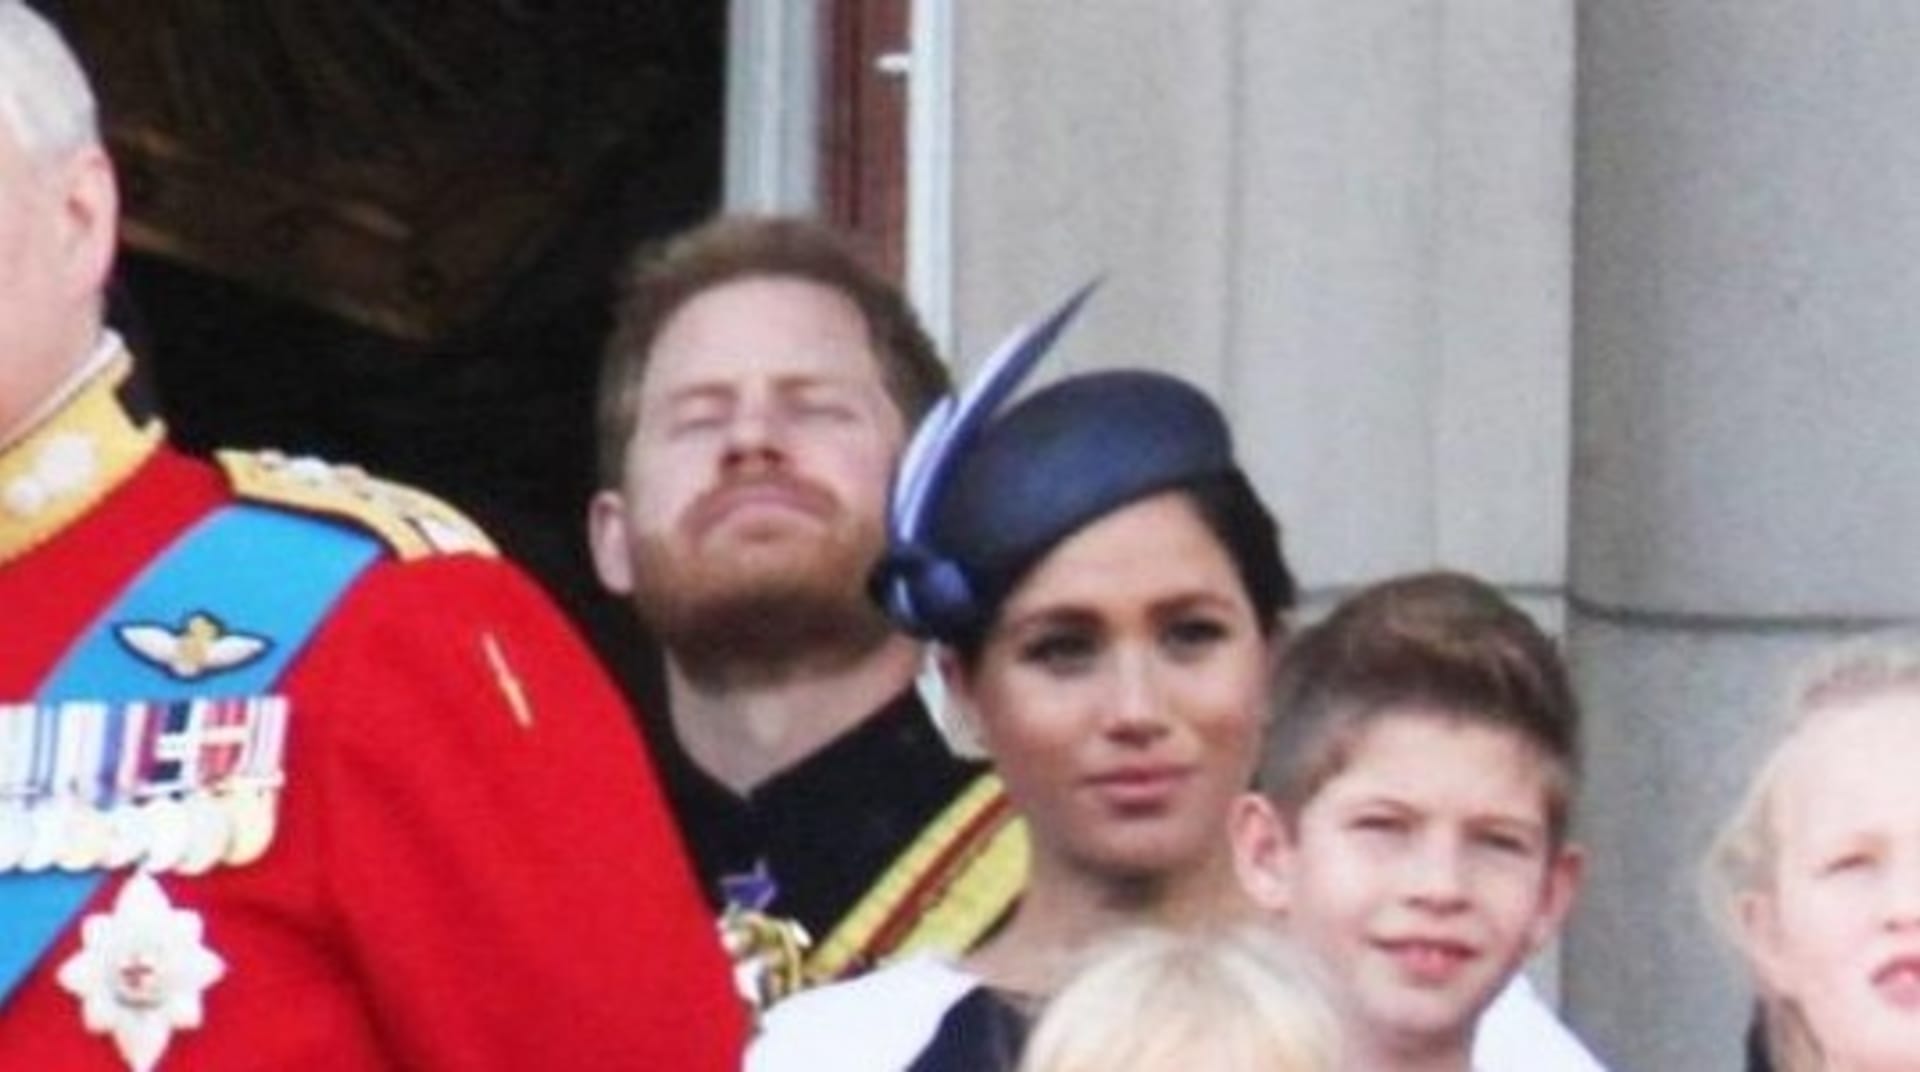 Princ Harry napomenul otáčející se Meghan během oslav narozeniny královny